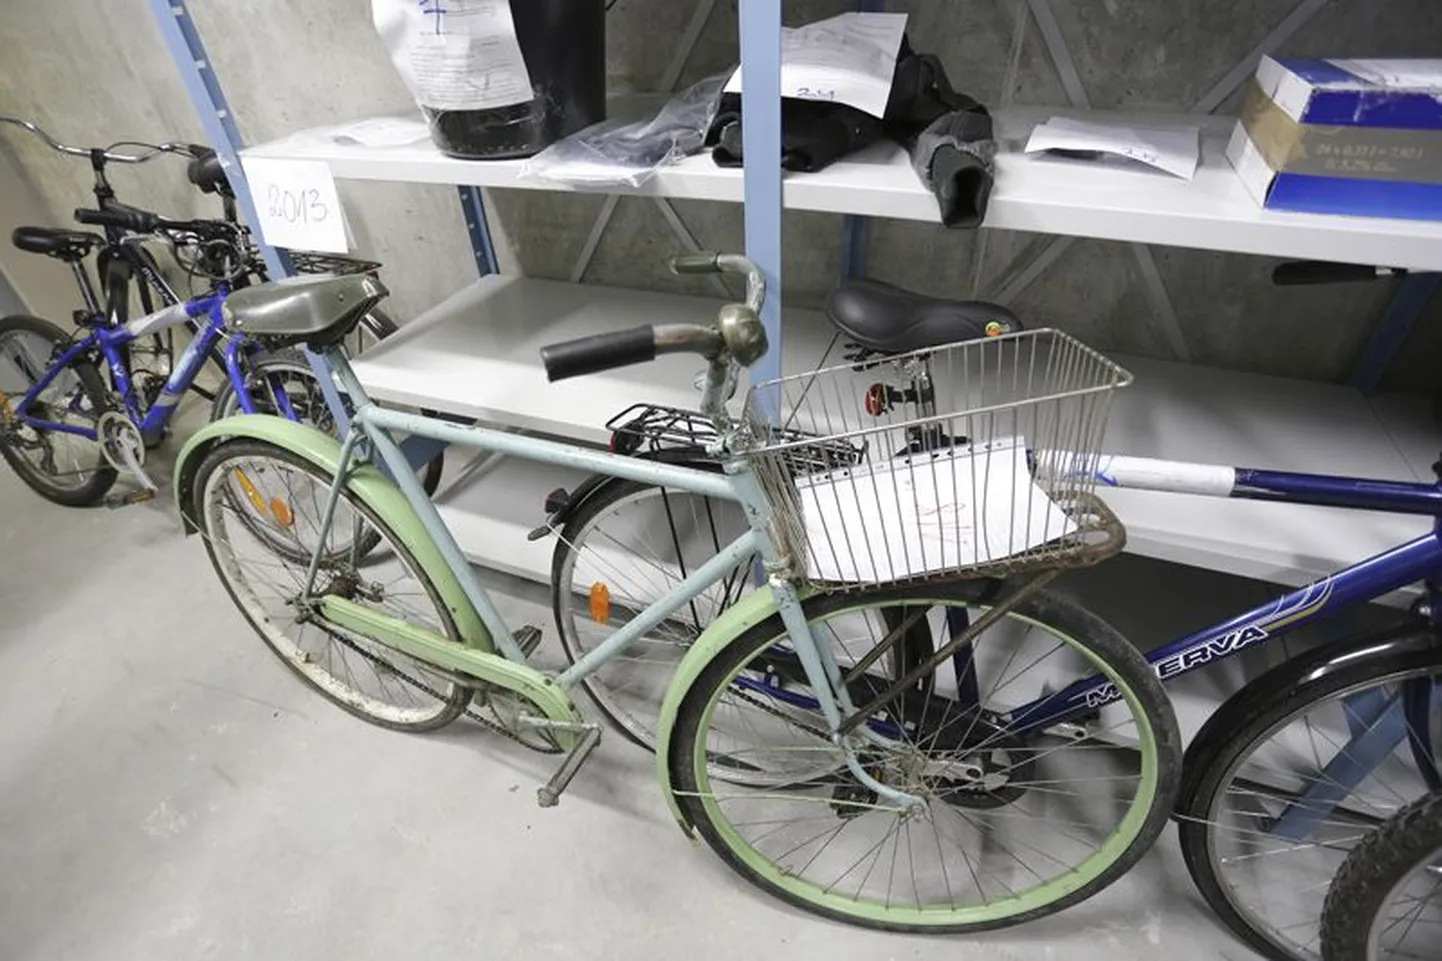 Politsei leitud asjade hoiuruumist viiakse peagi Rakvere linnavalitsusse kuus jalgratast ja ka riiulil olev sinine õllekast.